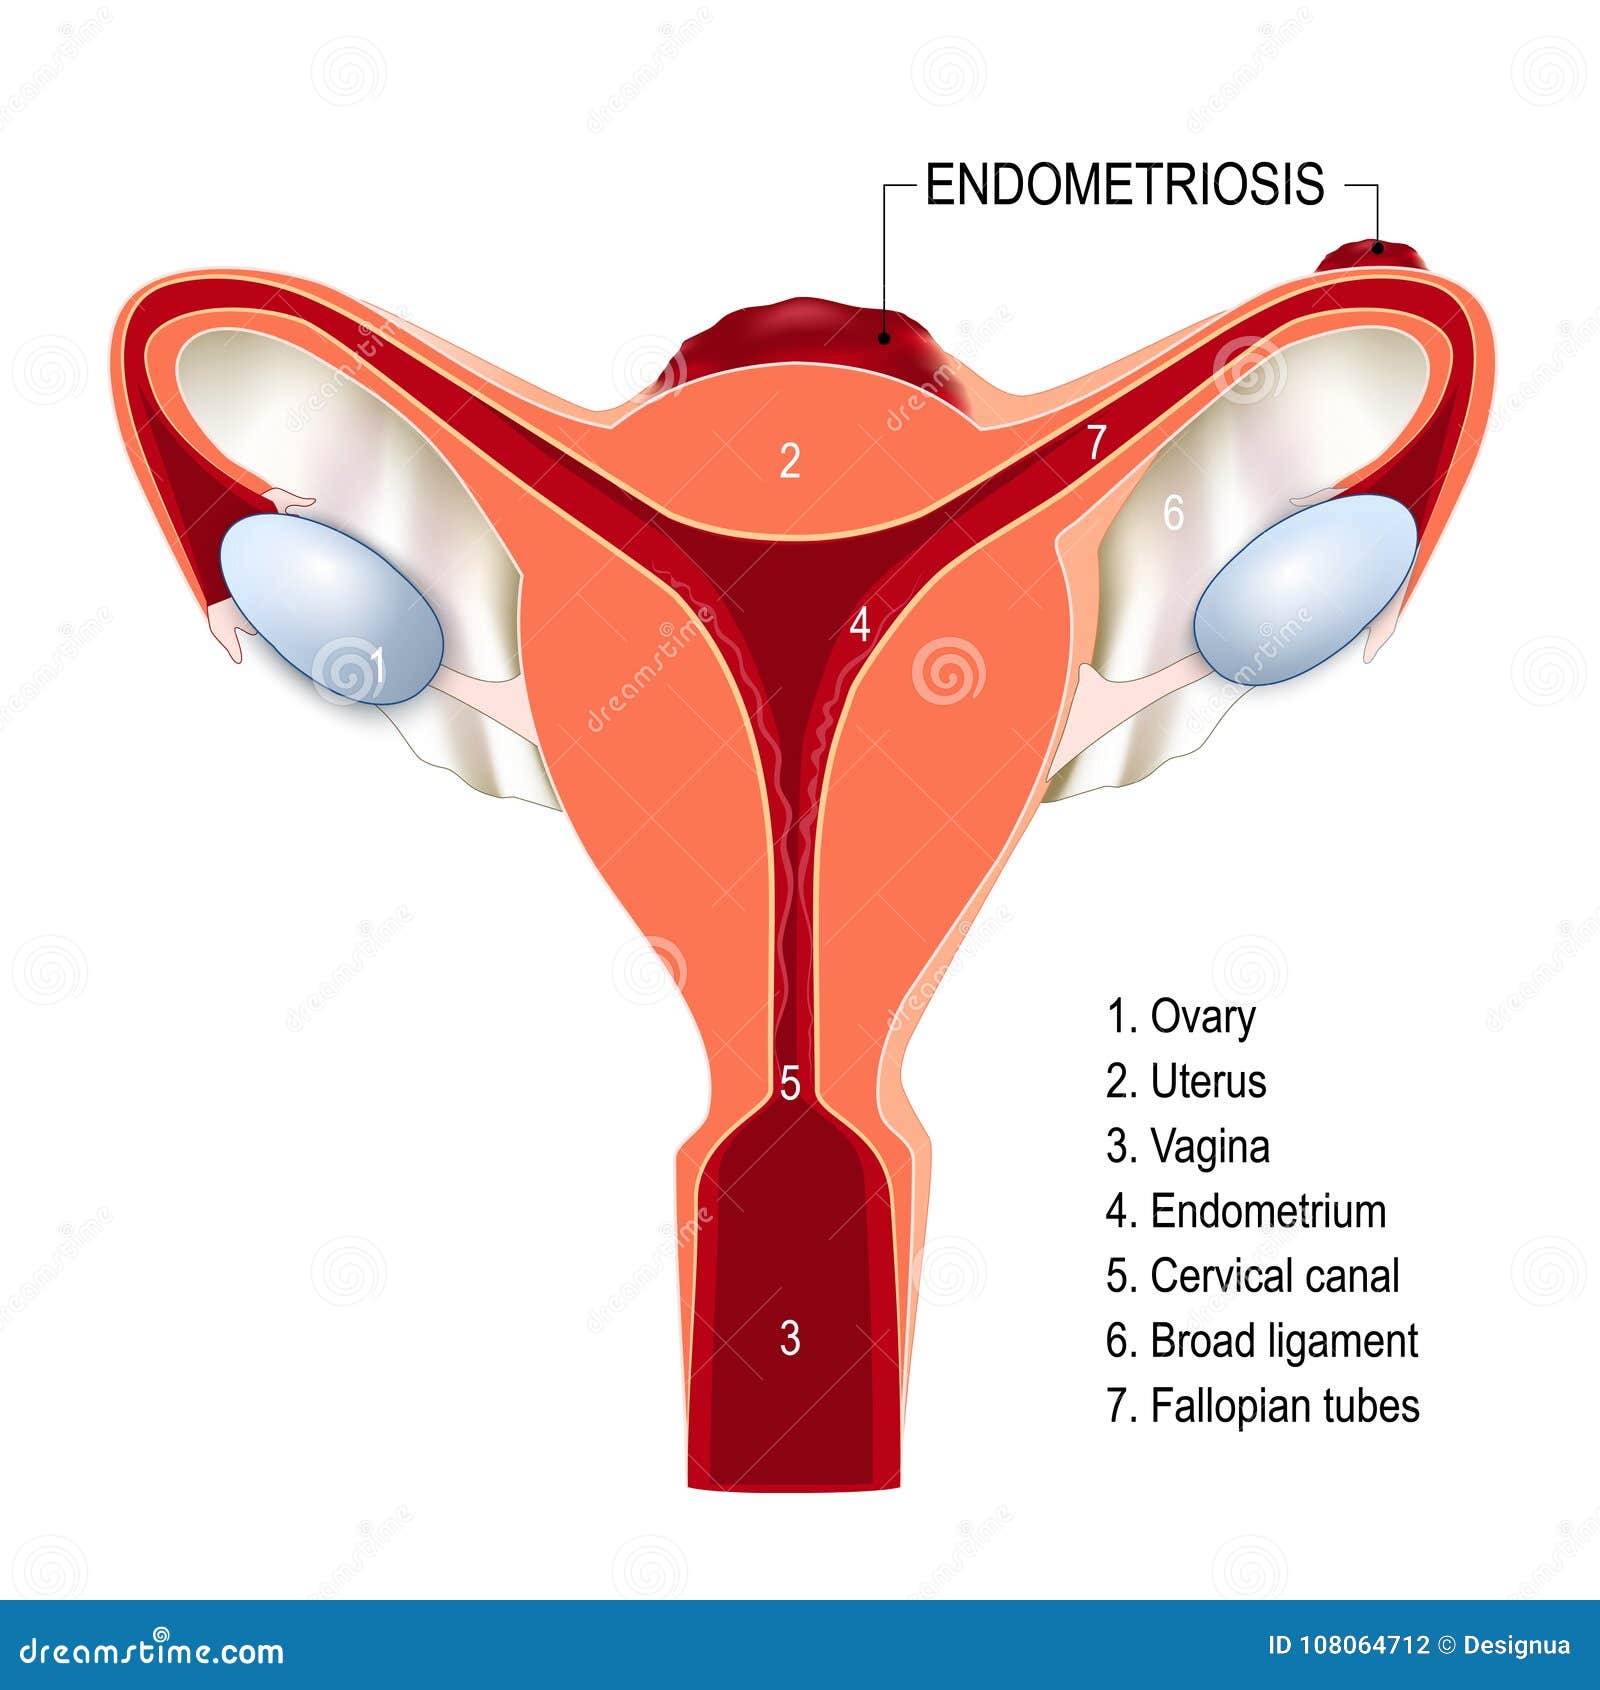 human papillomavirus infection endometriosis